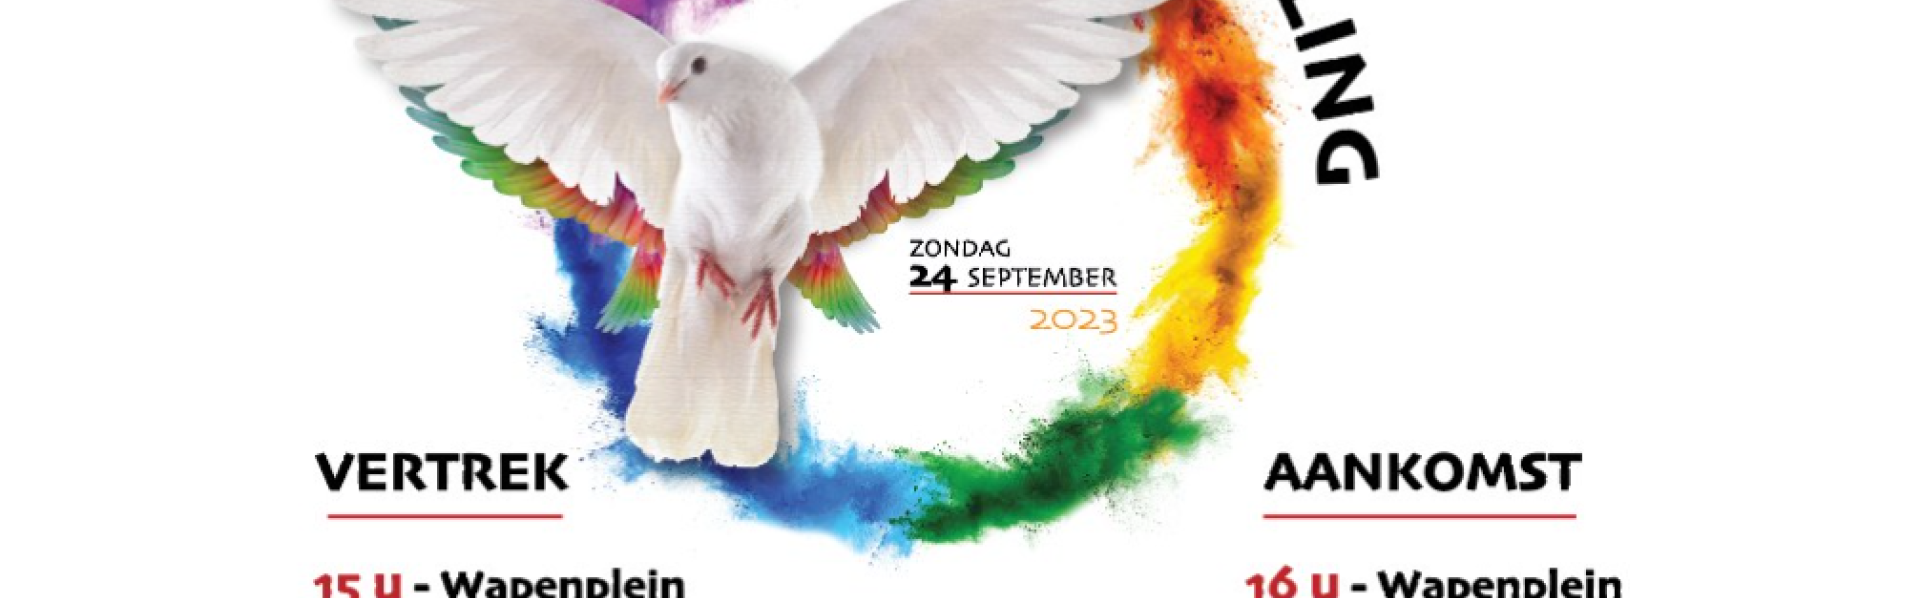 vredeswandeling poster met vliegende duif in een regenboogcirkel